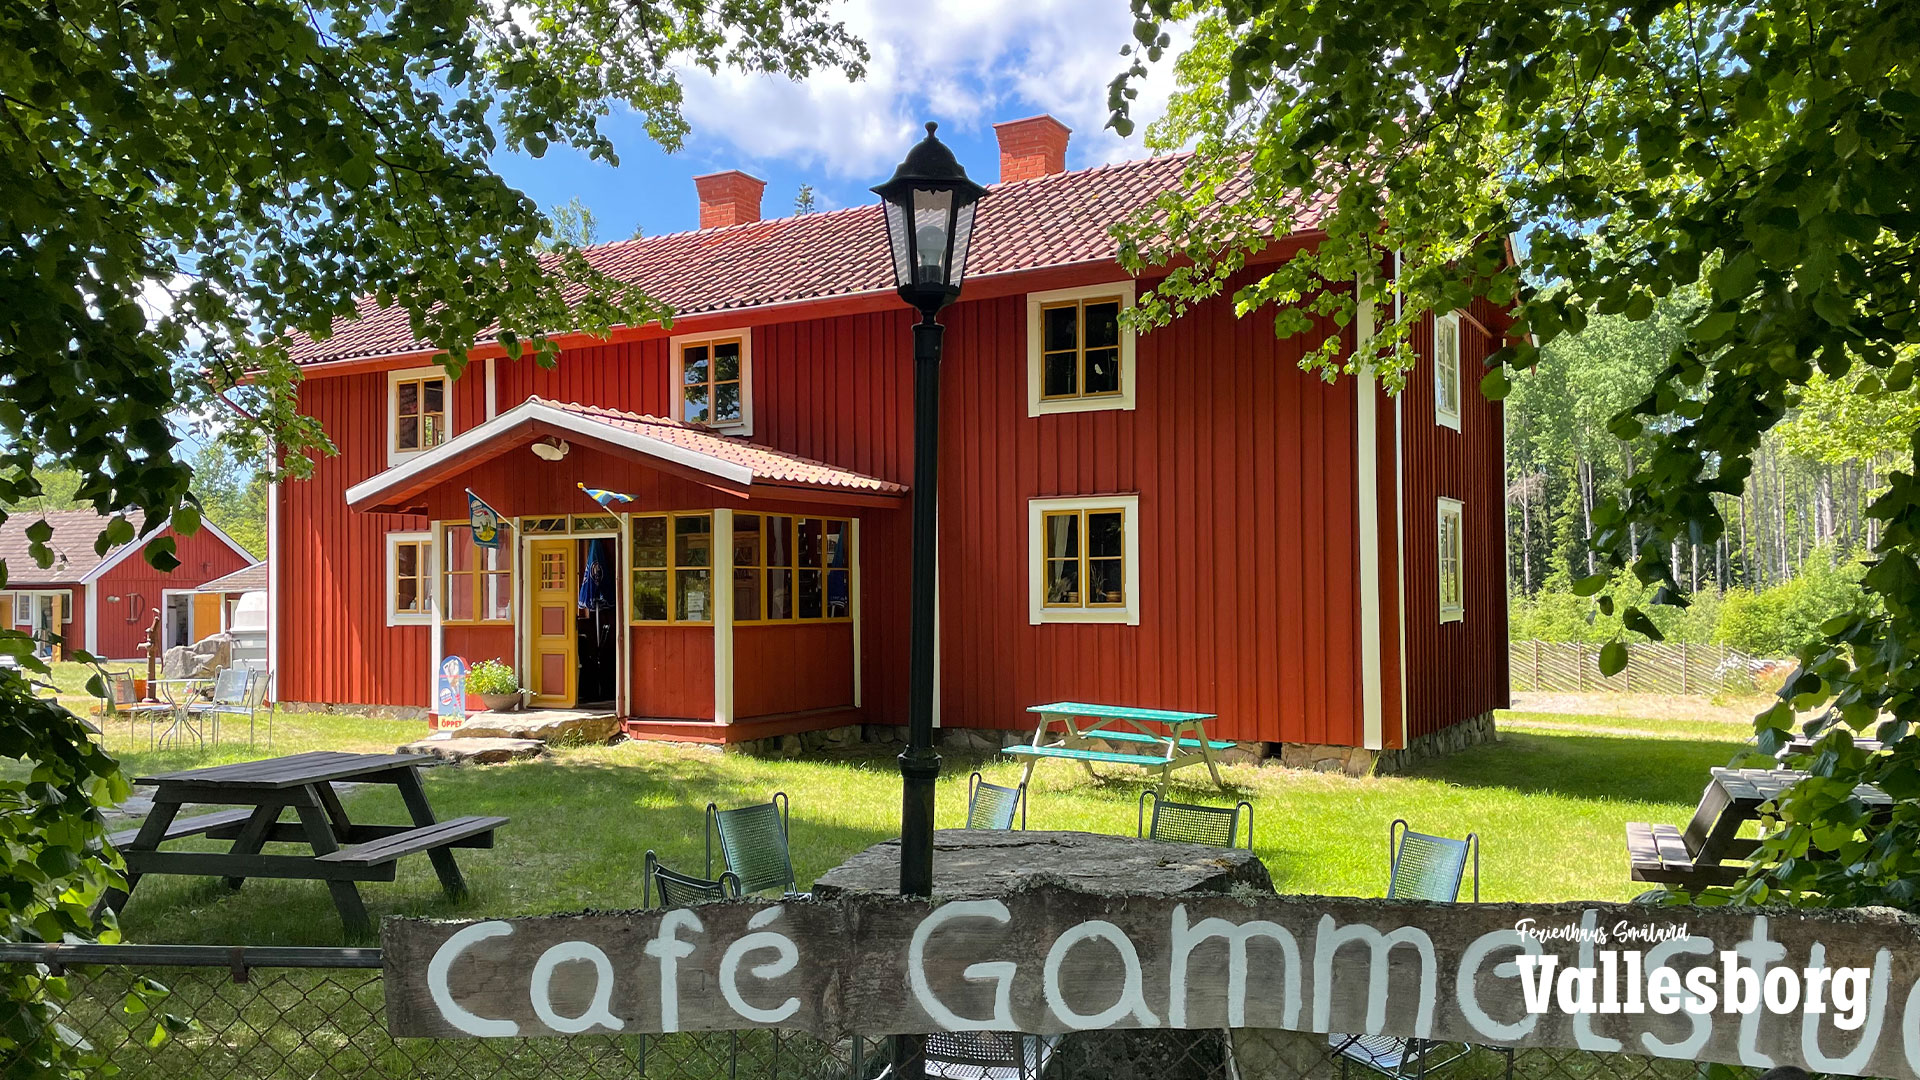 Bredaslatt Café mit frischem Kuchen und Kaffee in der Nähe von Tingsryd